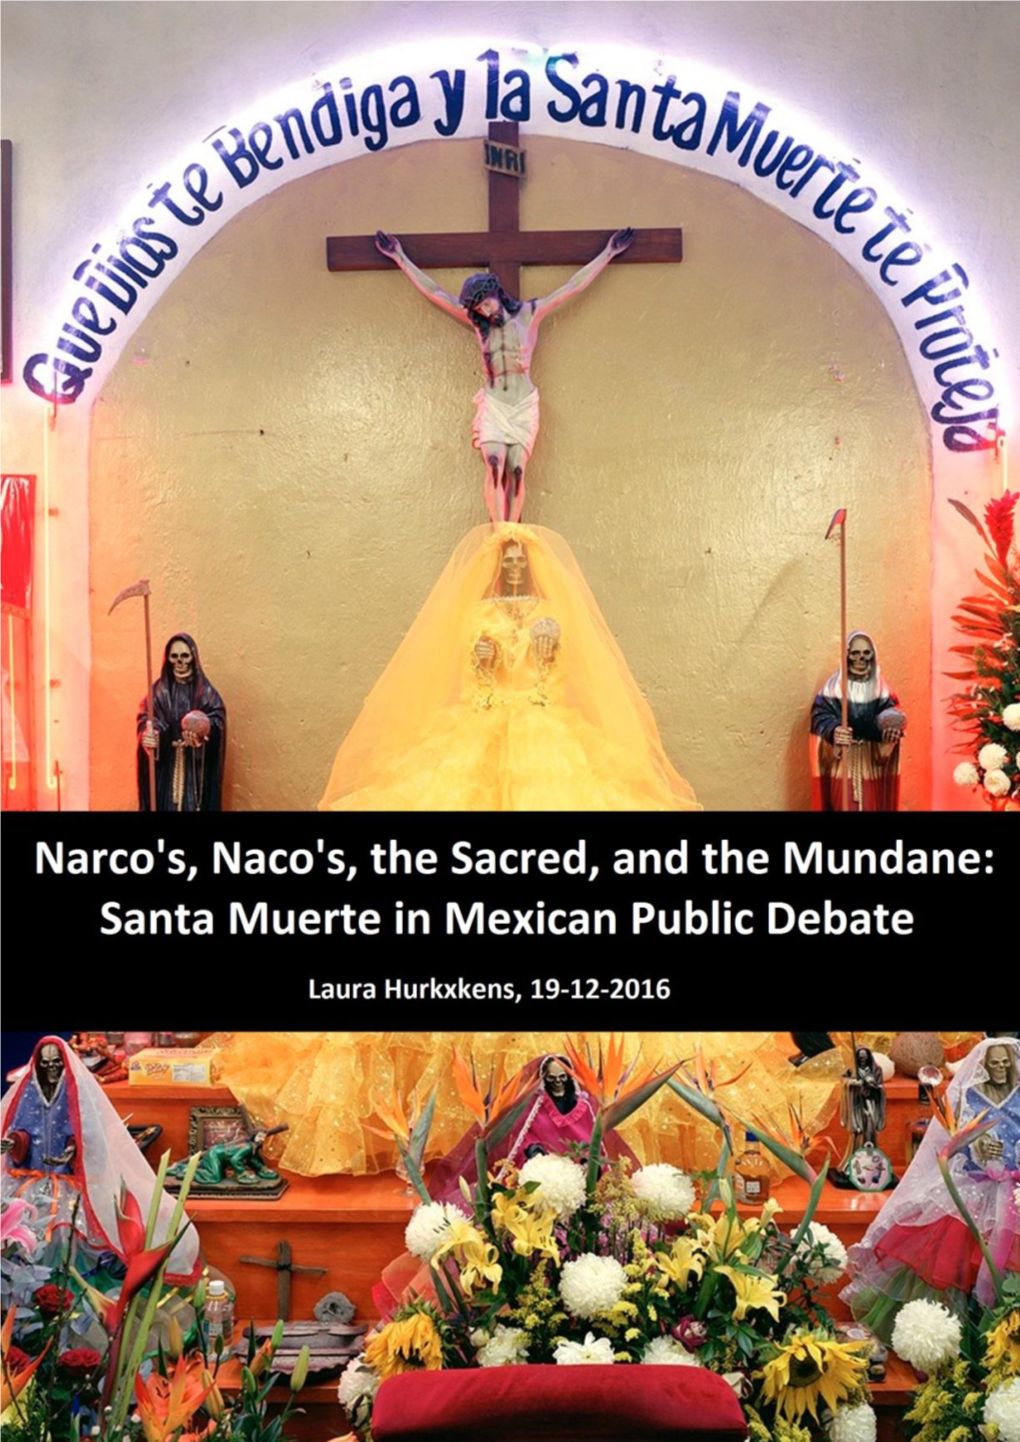 2. the Cult of Santa Muerte